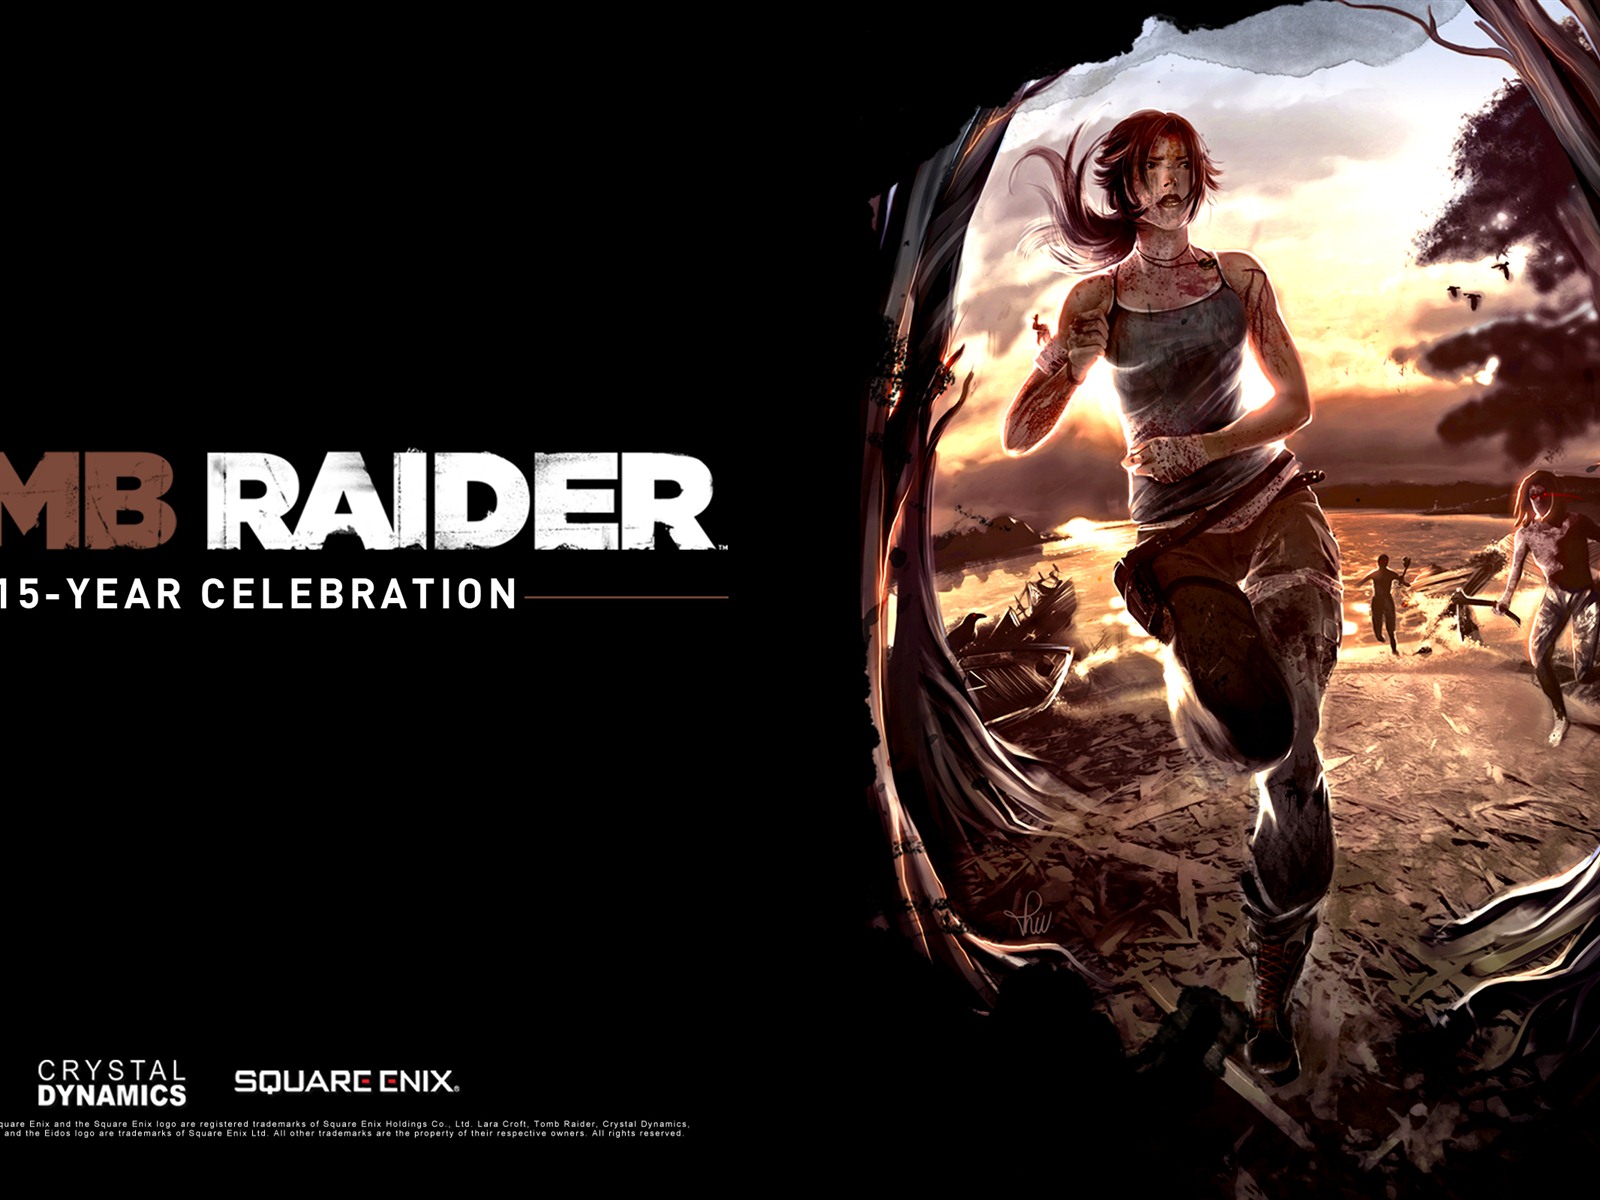 Tomb Raider 15-Year Celebration 古墓丽影15周年纪念版 高清壁纸8 - 1600x1200